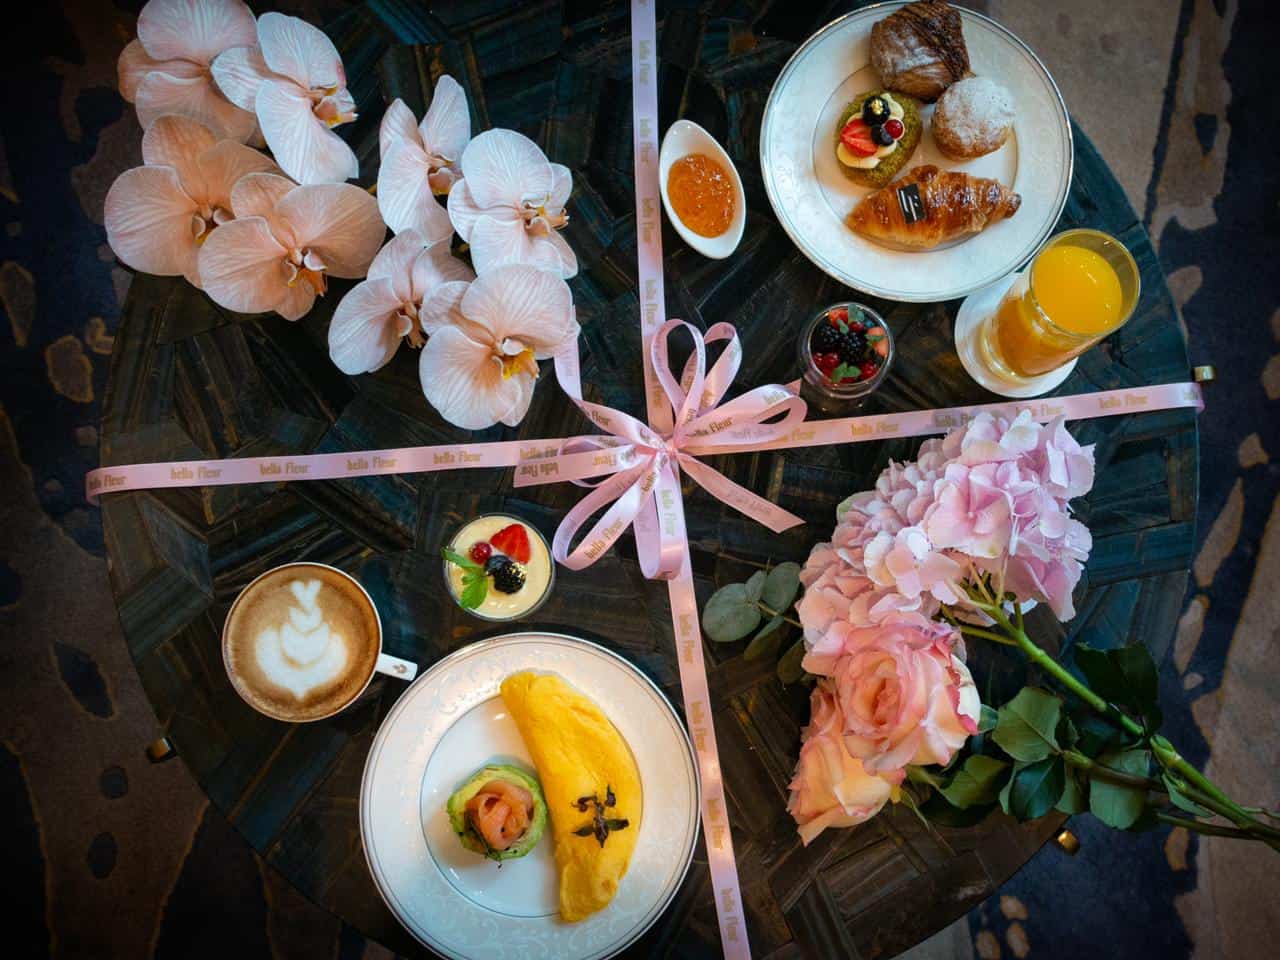 شنگری لا ہوٹل، دبئی میں پھولوں کے ساتھ ناشتہ کریں اور مزیدار تفریح ​​کا تجربہ کریں۔